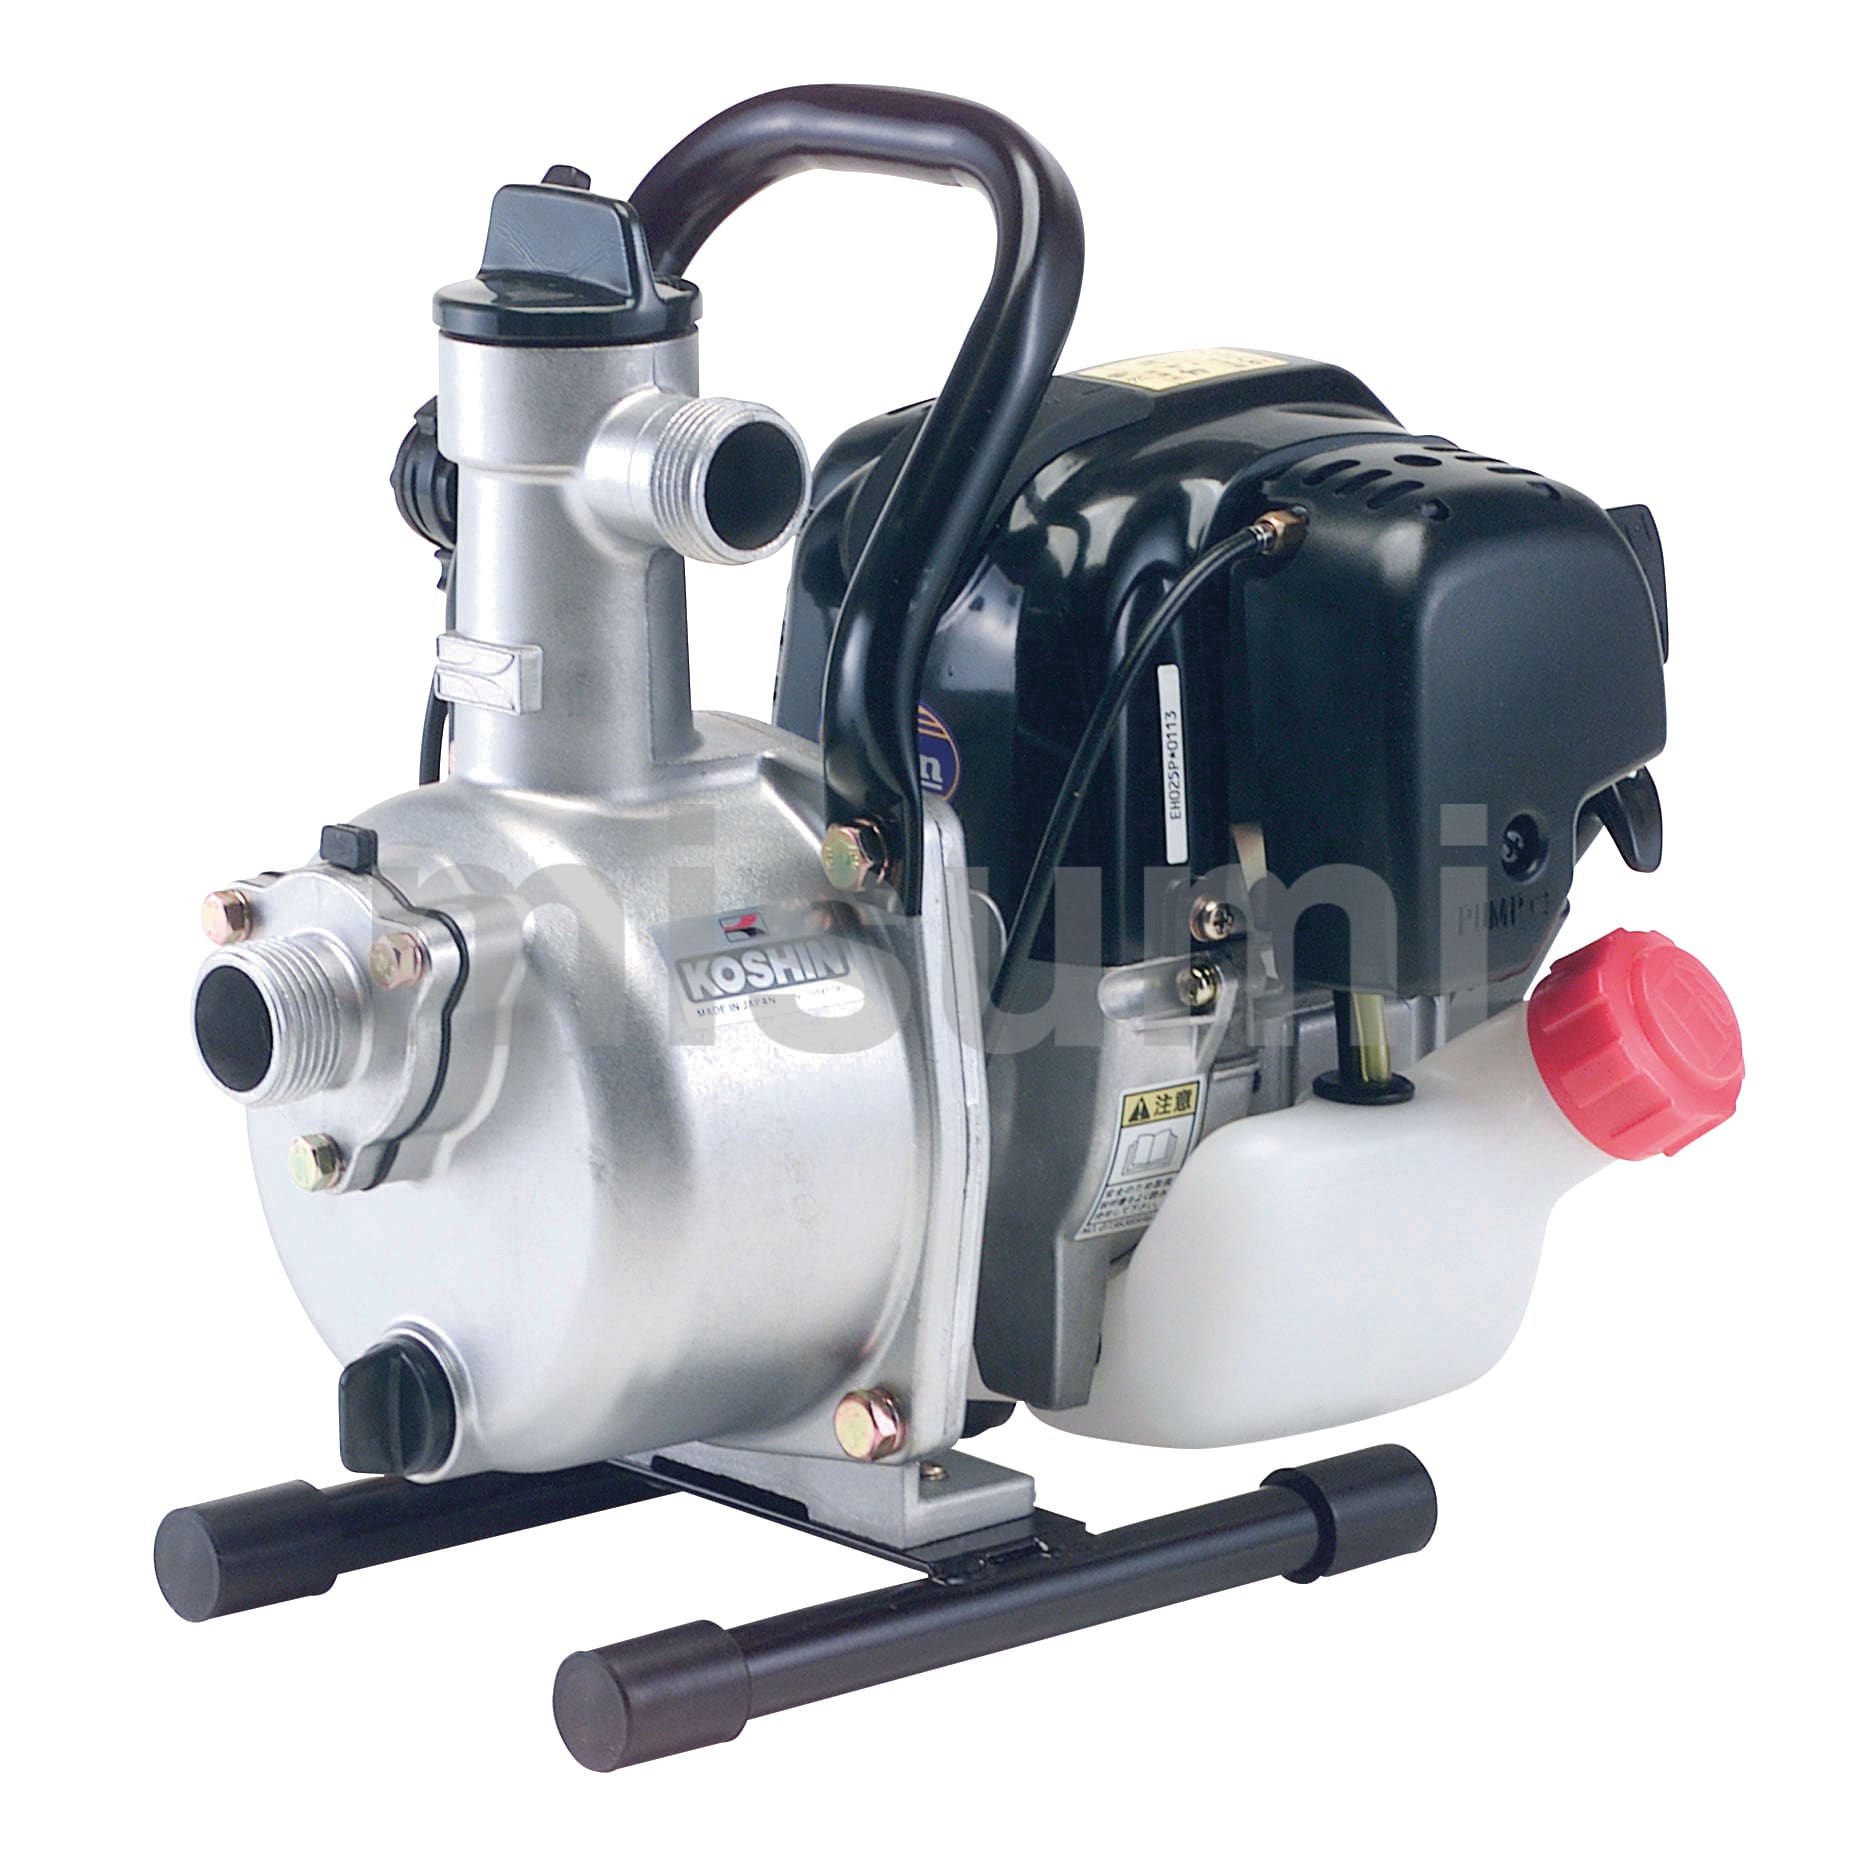 ナカトミ] エンジンポンプ ハイデルスポンプ 2サイクル 1インチ (25mm) 最大吐出量 120L/min エンジン式ポンプ 排水ポンプ 給水ポ  電動工具